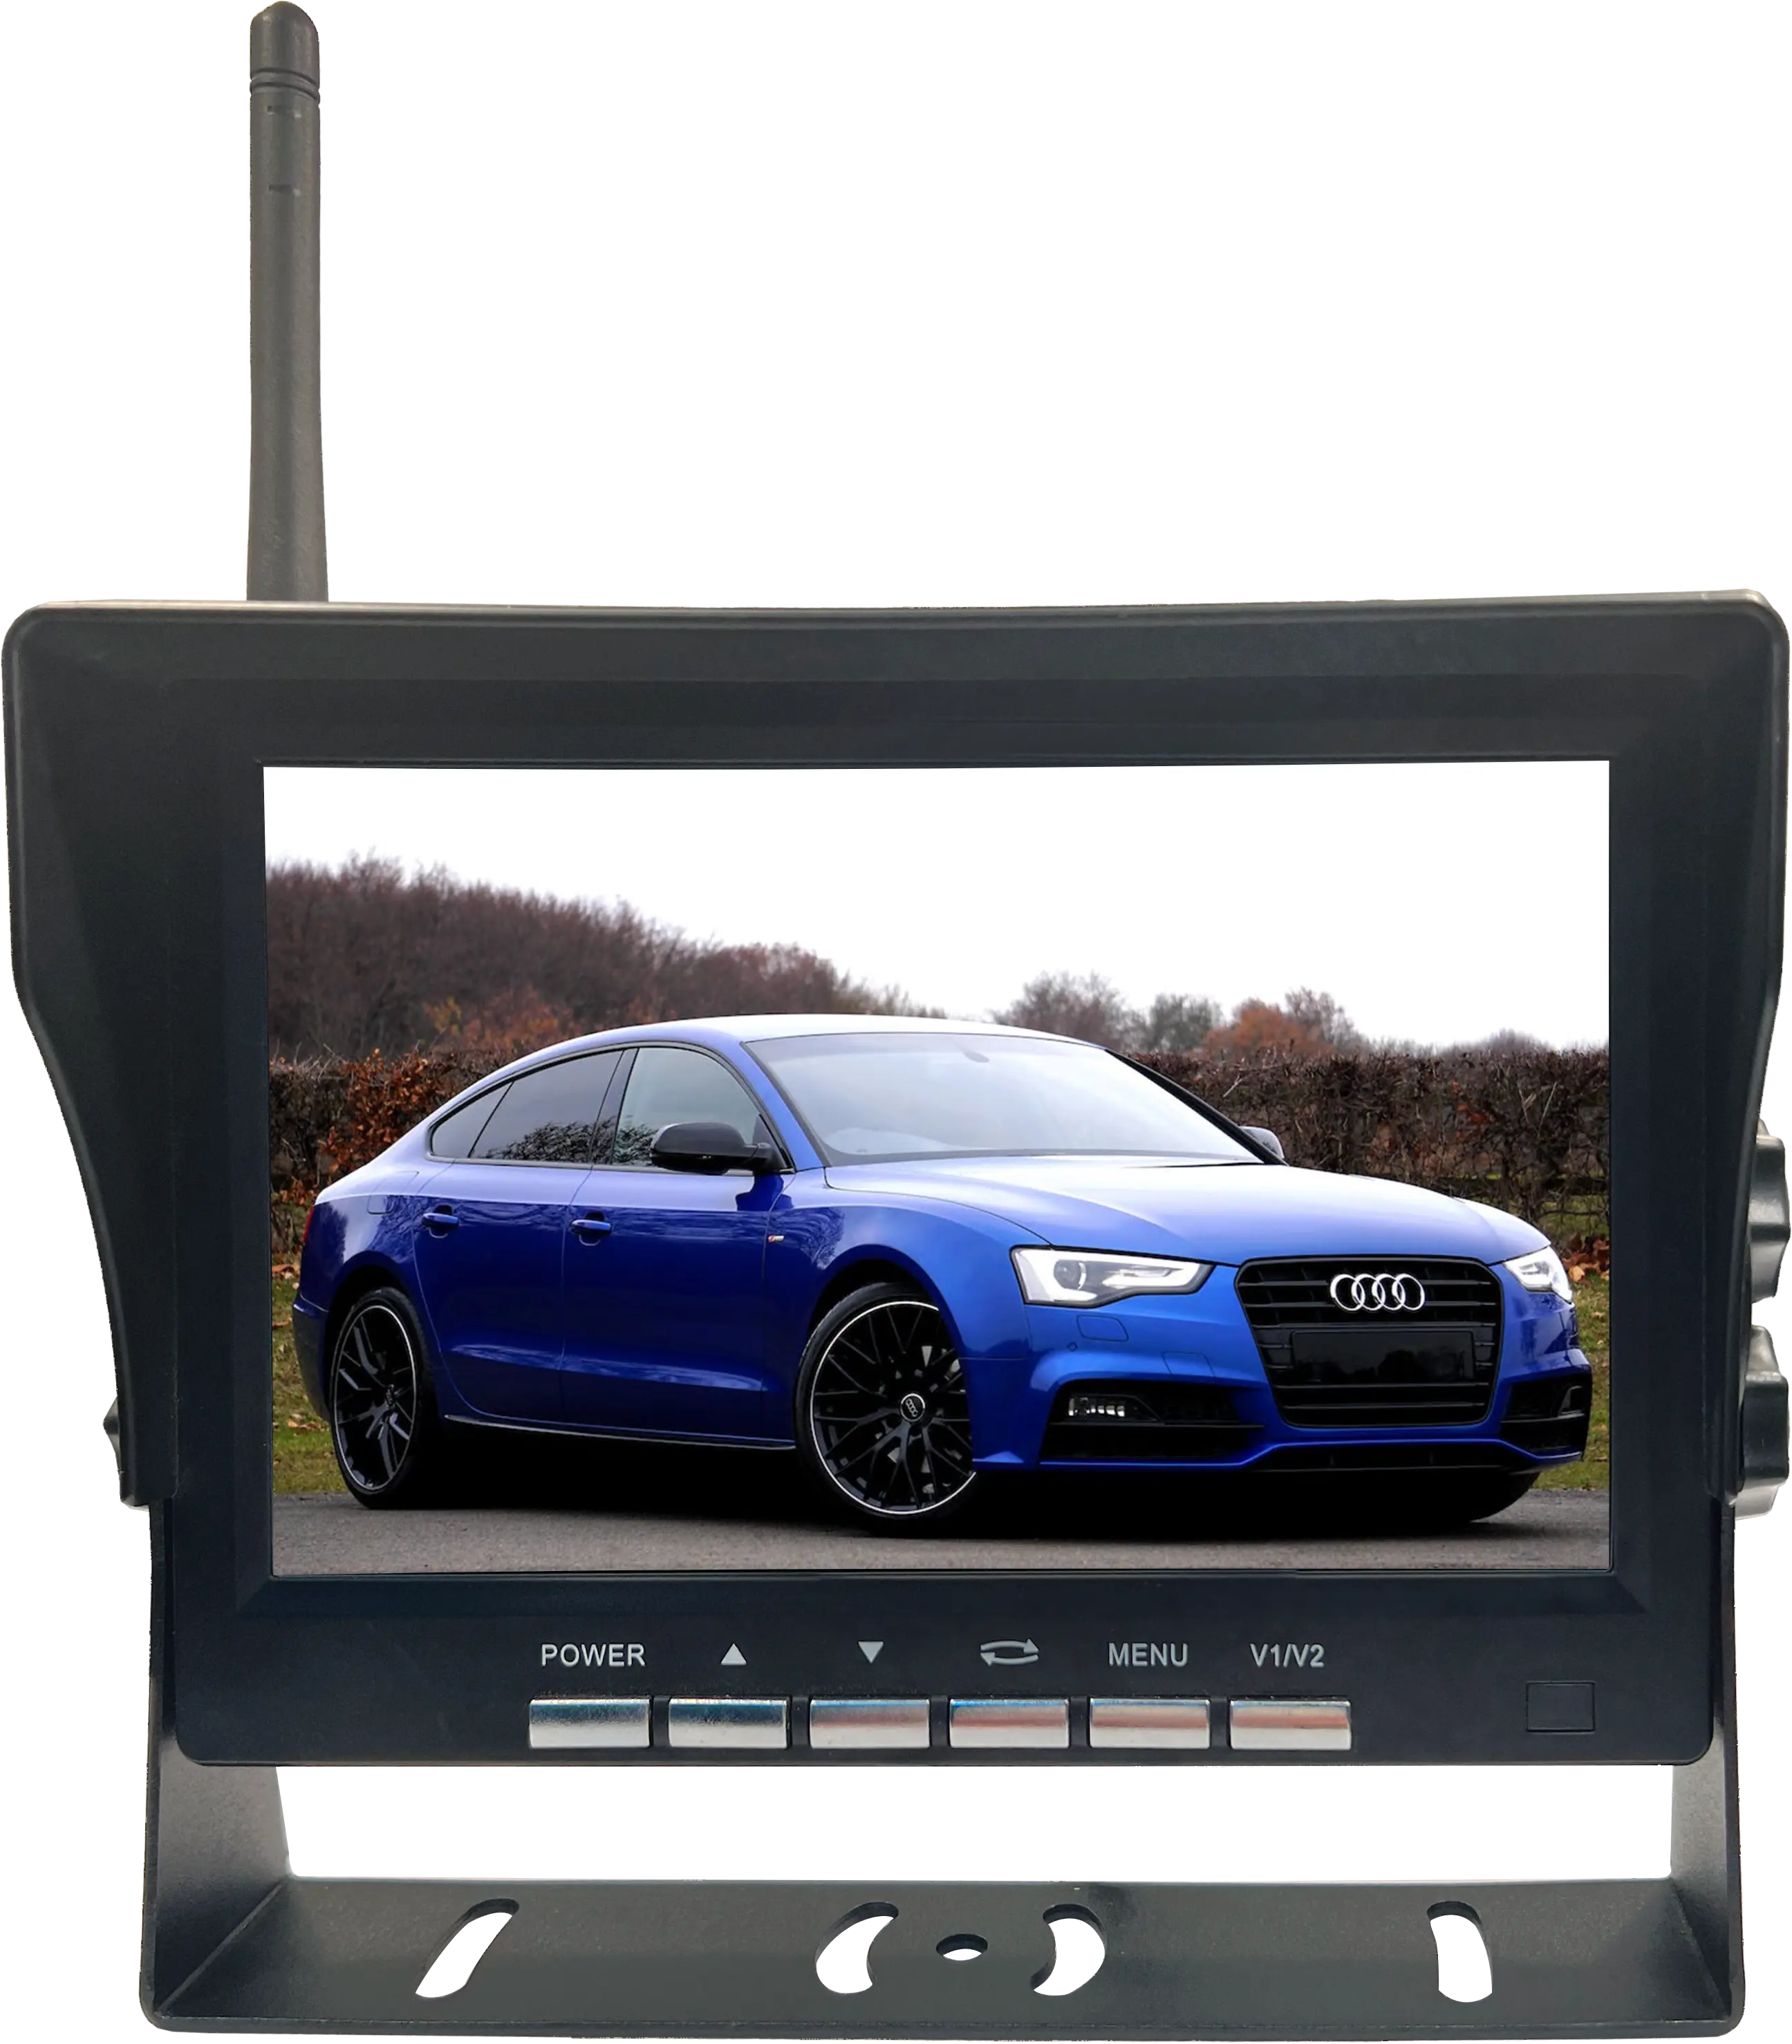 Monitor de marcha atrás de coche TFT LCD inalámbrico de 10 pulgadas, traje HD para todos los coches, cámara de salpicadero en 4 idiomas, grabadora Dvr, respaldo frontal Dual